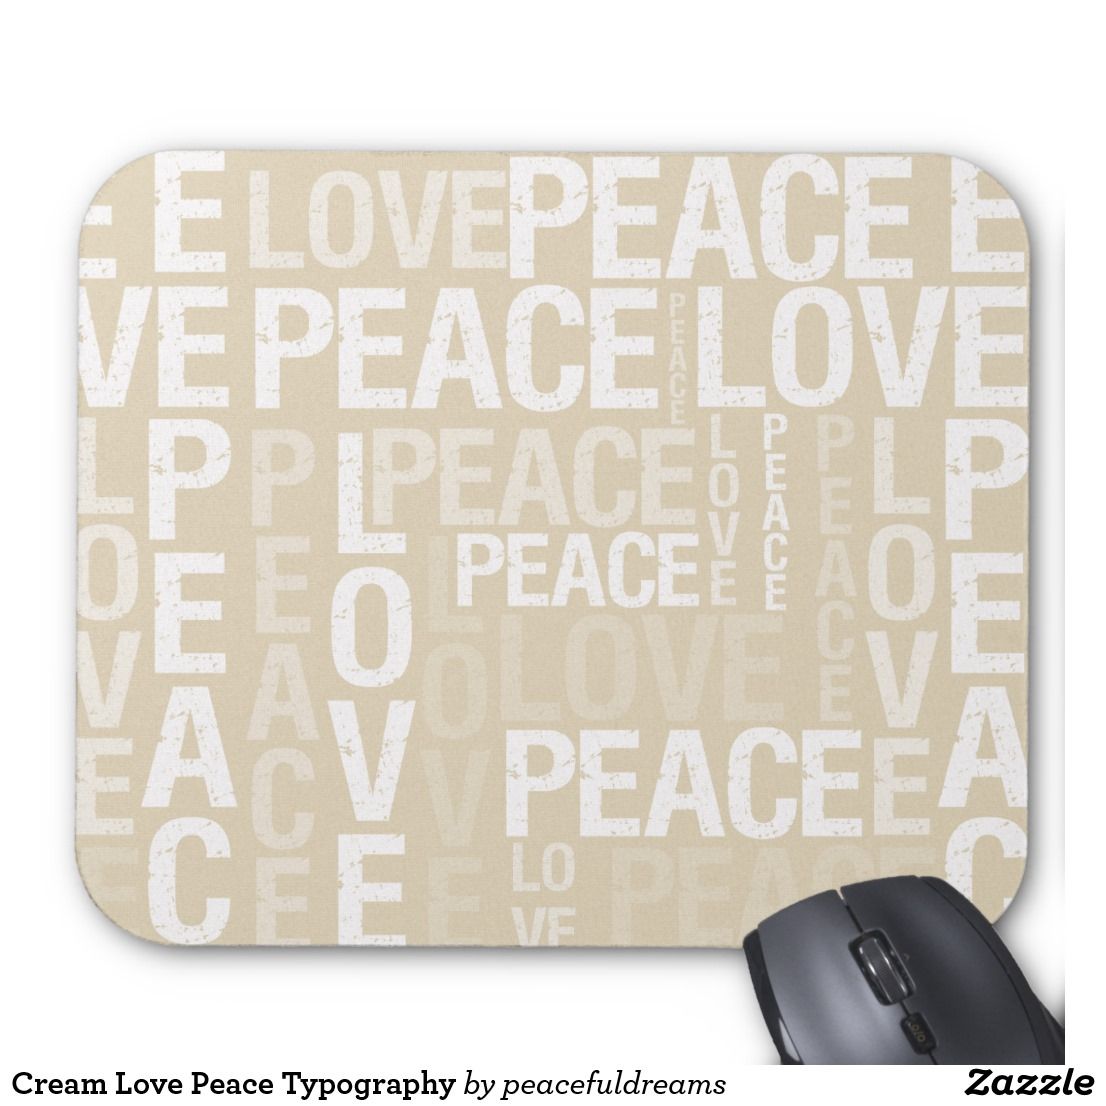 Peace Love Joy Doodle Mouse Pad 9.25